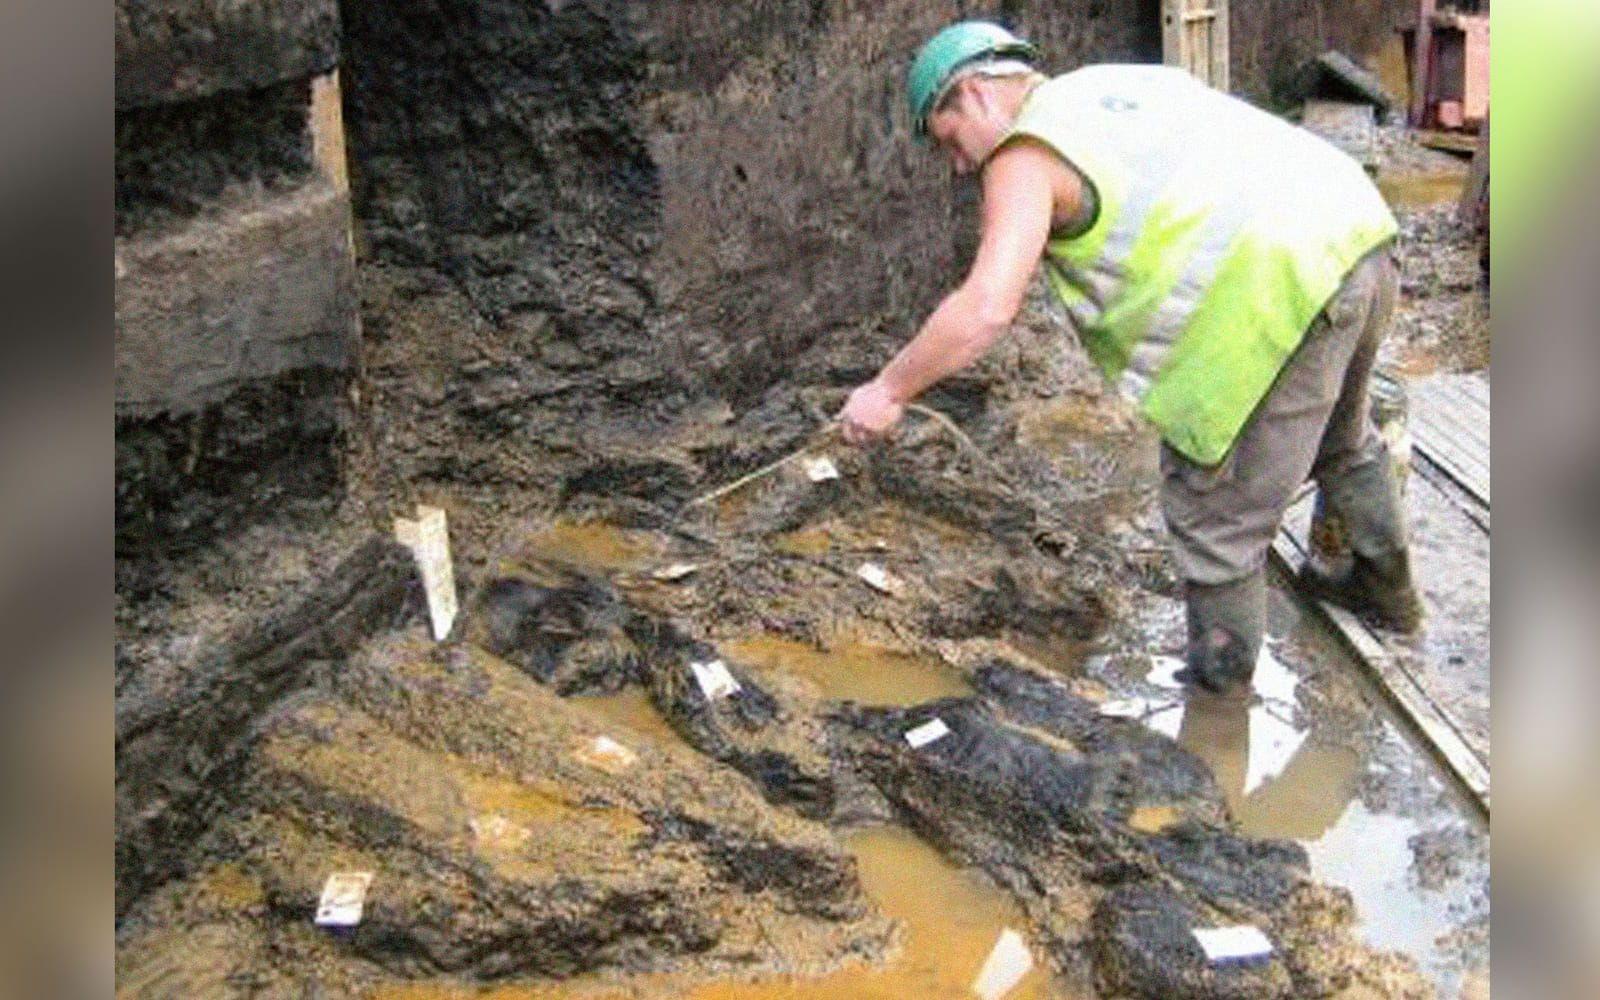 <strong>VÄRLDENS ÄLDSTA VÄG</strong> 2009 <a href="”https://www.sciencedaily.com/releases/2009/08/090812104141.htm”" target="”_blank”">grävde</a> arkeologer fram en timmerplattform i Plumstead, London, som har använts för att ta sig fram över en sankmark. Vägen har daterats till 6000 år och ses som ett av de första exemplen på att människan på egen väg försökt påverka och övervinna landskapet.